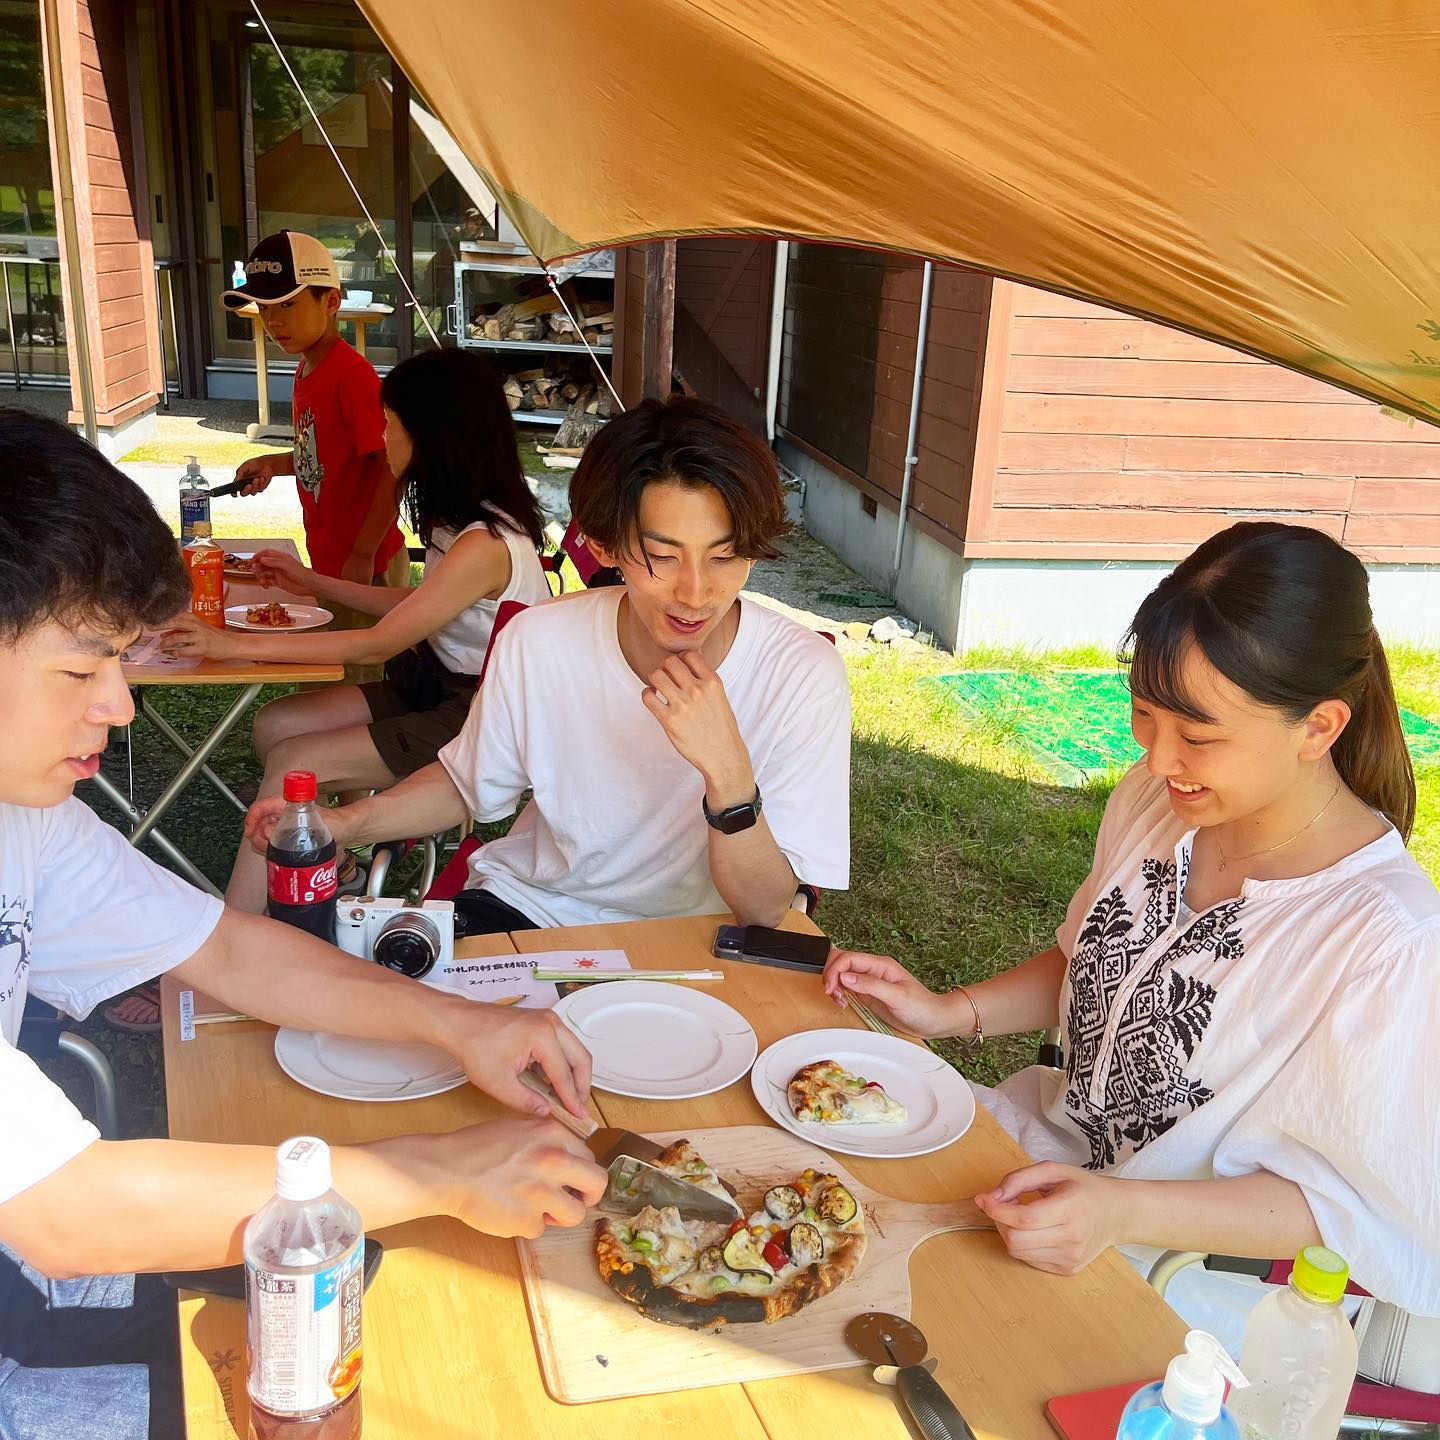 .こんにちは！今日はすっごく暑かったですね️本日キャンプ場は満サイトでございます‍♀️朝からご予約のお電話をいただきましたがお断りさせていただいたお客様、申し訳ありませんこんなににぎやかなキャンプ場は久しぶりでスタッフたちもフル稼働！そんな中ピザイベントにご参加いただきありがとうございました️午前中のお客様は埼玉県からいらしてくださいました！なんとあの、『銀の匙』が大好きな娘さんが十勝に行きたい！ということでご旅行の中にピザイベントを組んでいただきました️私も『銀の匙』大好きで、読み込んでいるので娘さんとマニアックな会話ができて嬉しかったです笑そんなかわいいお子様とピザ作り2人ともとっても上手にトッピング️トッピングの素材そのものも食べてもらい甘みやみずみずしさを直に感じていただきましたピザ作りは大成功ピザ窯も喜んでもらえてよかったです️おいしそうにか食べている姿を見て頑張ってよかったなあとしみじみ、午後からは2組のお客様‍♀️1組目は男の子の兄弟が始まる前からトッピングのお肉を見て『食べたい、、、』とつぶやき笑いが起きました️さっそく生地を伸ばしてもらいお待ちかねのトッピング2人とも違ったトッピングをされてとっても美味しそうにできました！お肉を狙っていたお兄ちゃんは少しつまみ食い️『うまあ！』とニコニコでした️2組目のお客さまはお友達3人とご参加3人でわいわい楽しく生地形成・トッピング途中つまみ食いのペースが止まらなかったのは笑ってしまいましたそれほど中札内村産の食材は魅力ということですね.お2組とも焼き上がりに大満足🥰お友達3人組のお客様にはスタッフおすすめのトマトソースなしのチーズ＋トッピングのピザを食べていただき『おーいーしーいー！』と喜びの声が️ご兄弟のお客様は私が洗い物をしにキッチンに戻っているとキッチンまで来て『ピザめっちゃうまかったっす』と伝えに来てくれました🥰（かわいい！）美味しいと自信を持って出せるピザです8月20日にもピザイベントしますのでぜひご参加くださいませ️本日ご参加いただいたお客様誠にありがとうございました‍♀️..#札内川園地キャンプ場 #札内川園地#日高山脈#日高山脈山岳センター #中札内村#帯広#十勝#銀の匙#ピザ#ピザ窯#ピザ作り#大自然#スノーピーク#中札内産田舎どり #中札内産食材#キャンプ#キャンプが好き#キャンプ男子#キャンプ女子#ファミリーキャンプ#夏休みイベント#夏休み